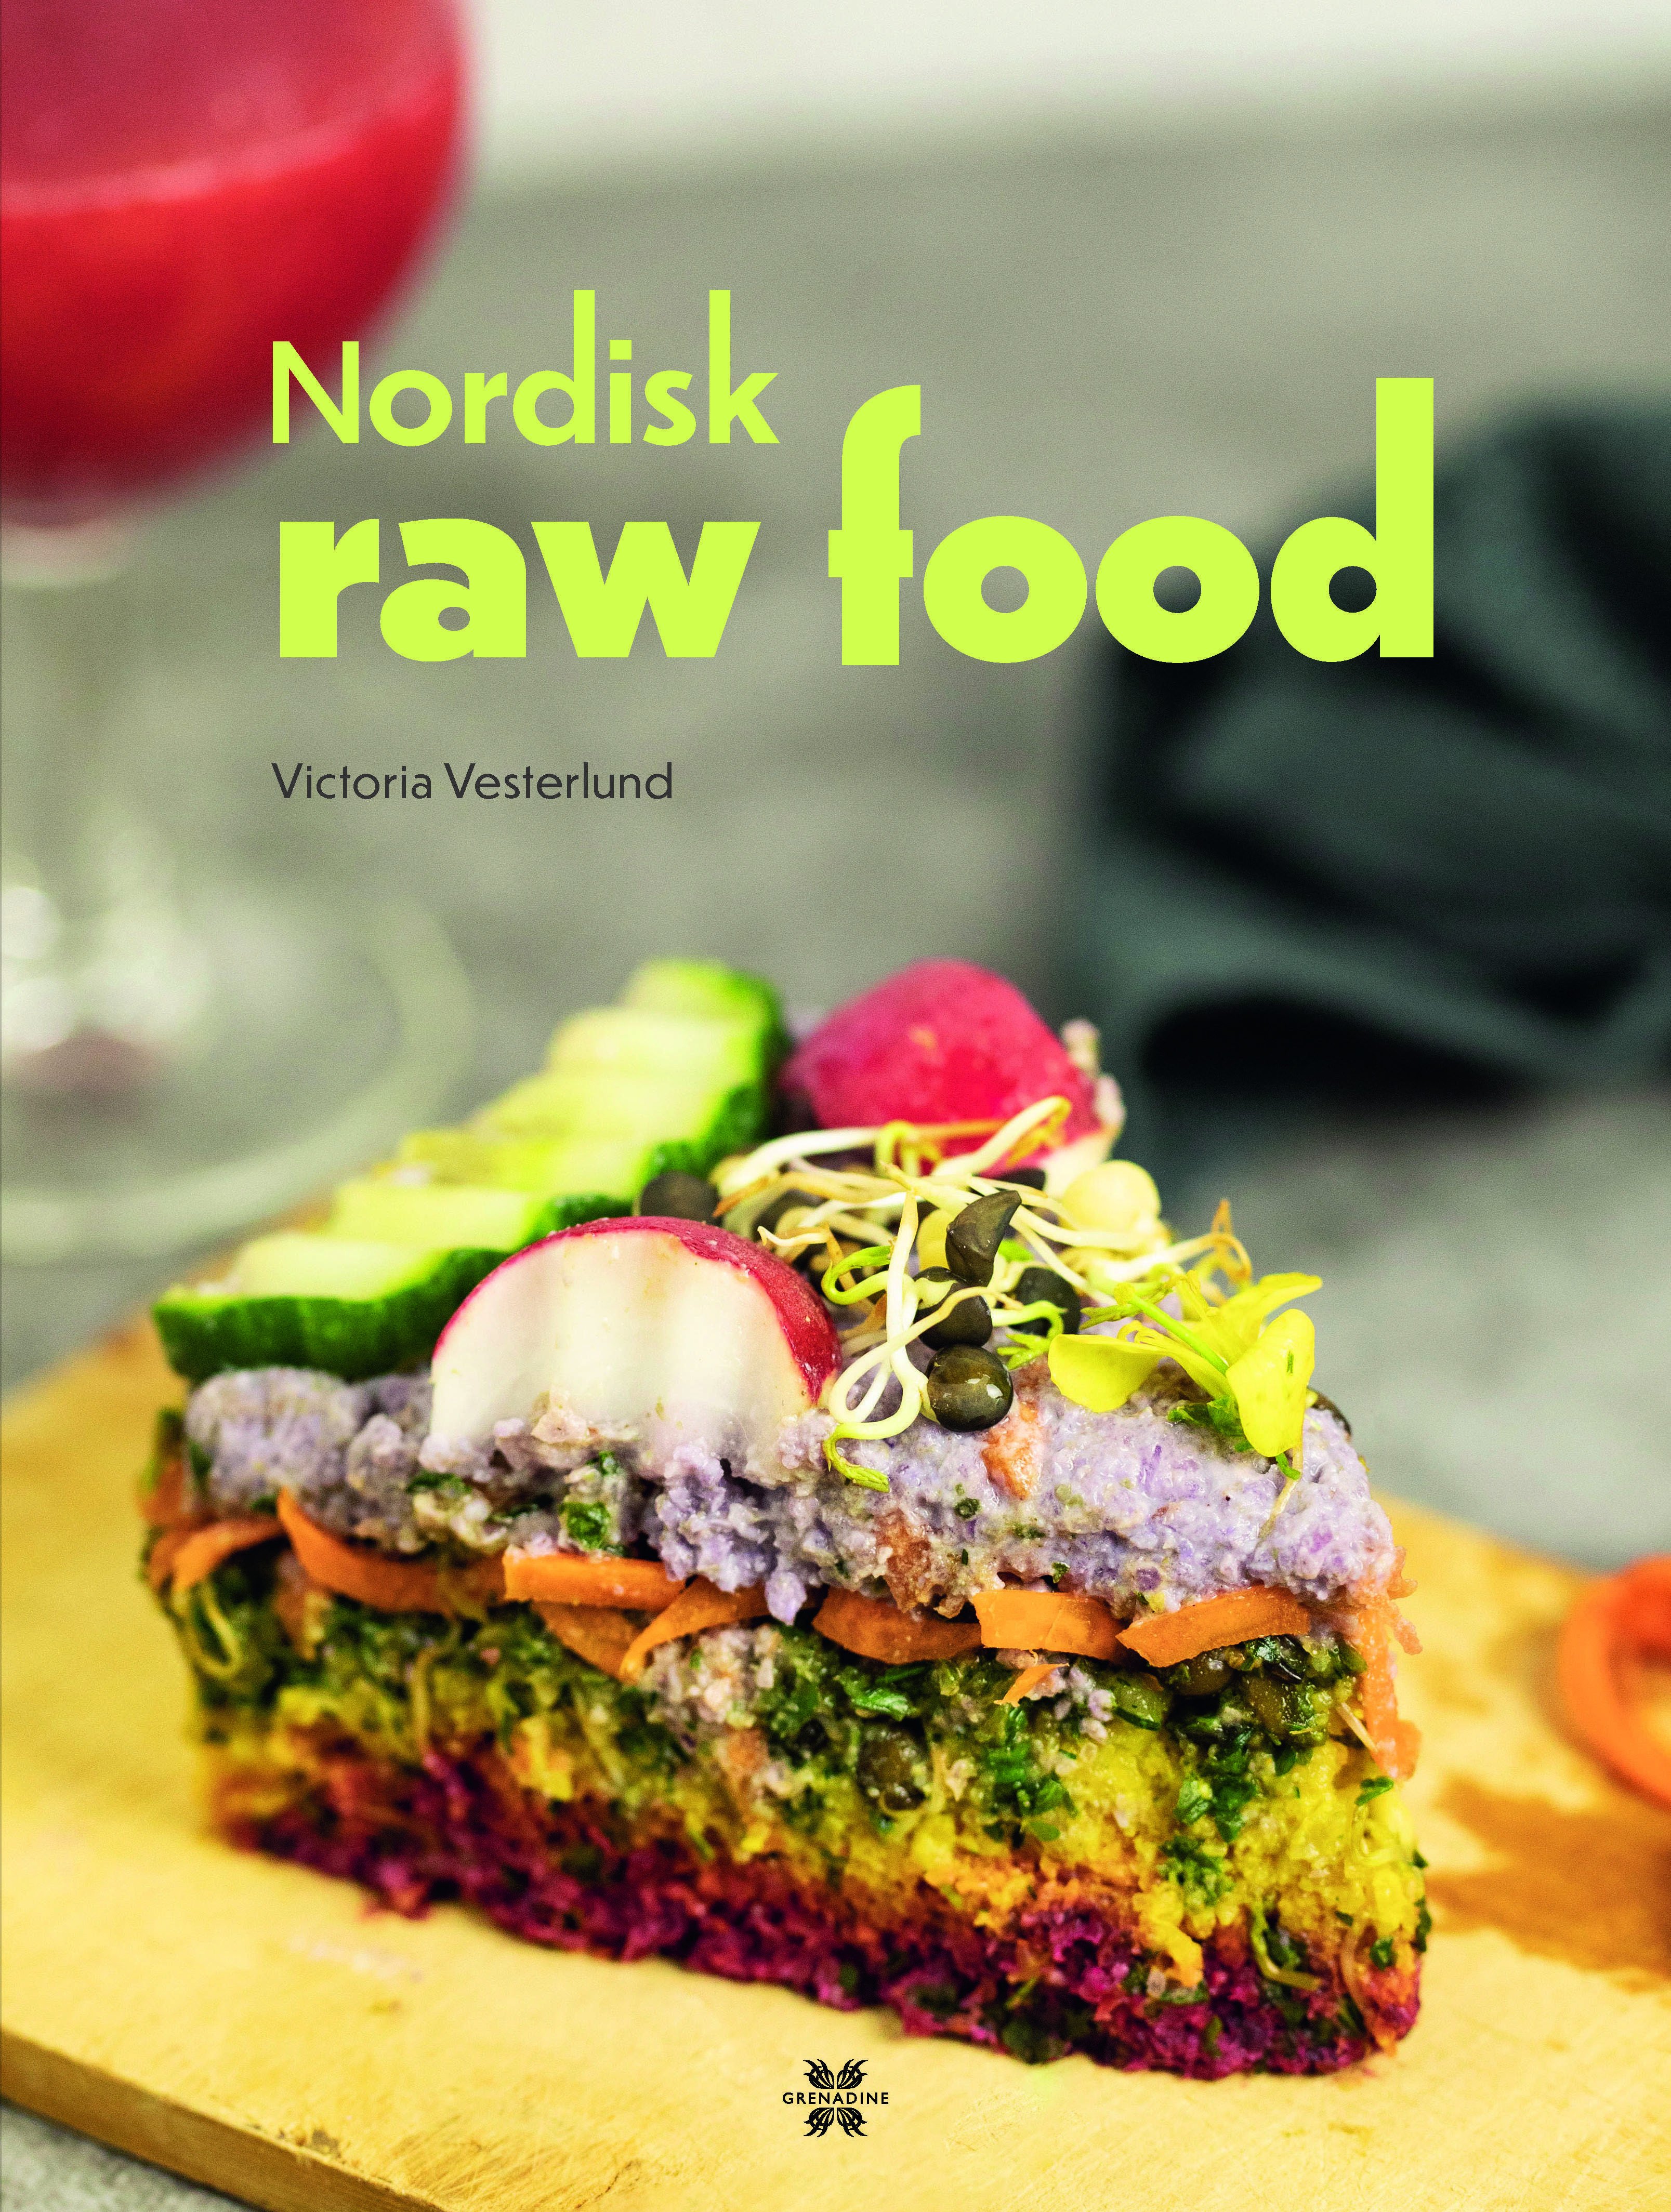 Nordisk raw food är skriven av författaren Victoria Vesterlund, Grenadine Bokförlag.